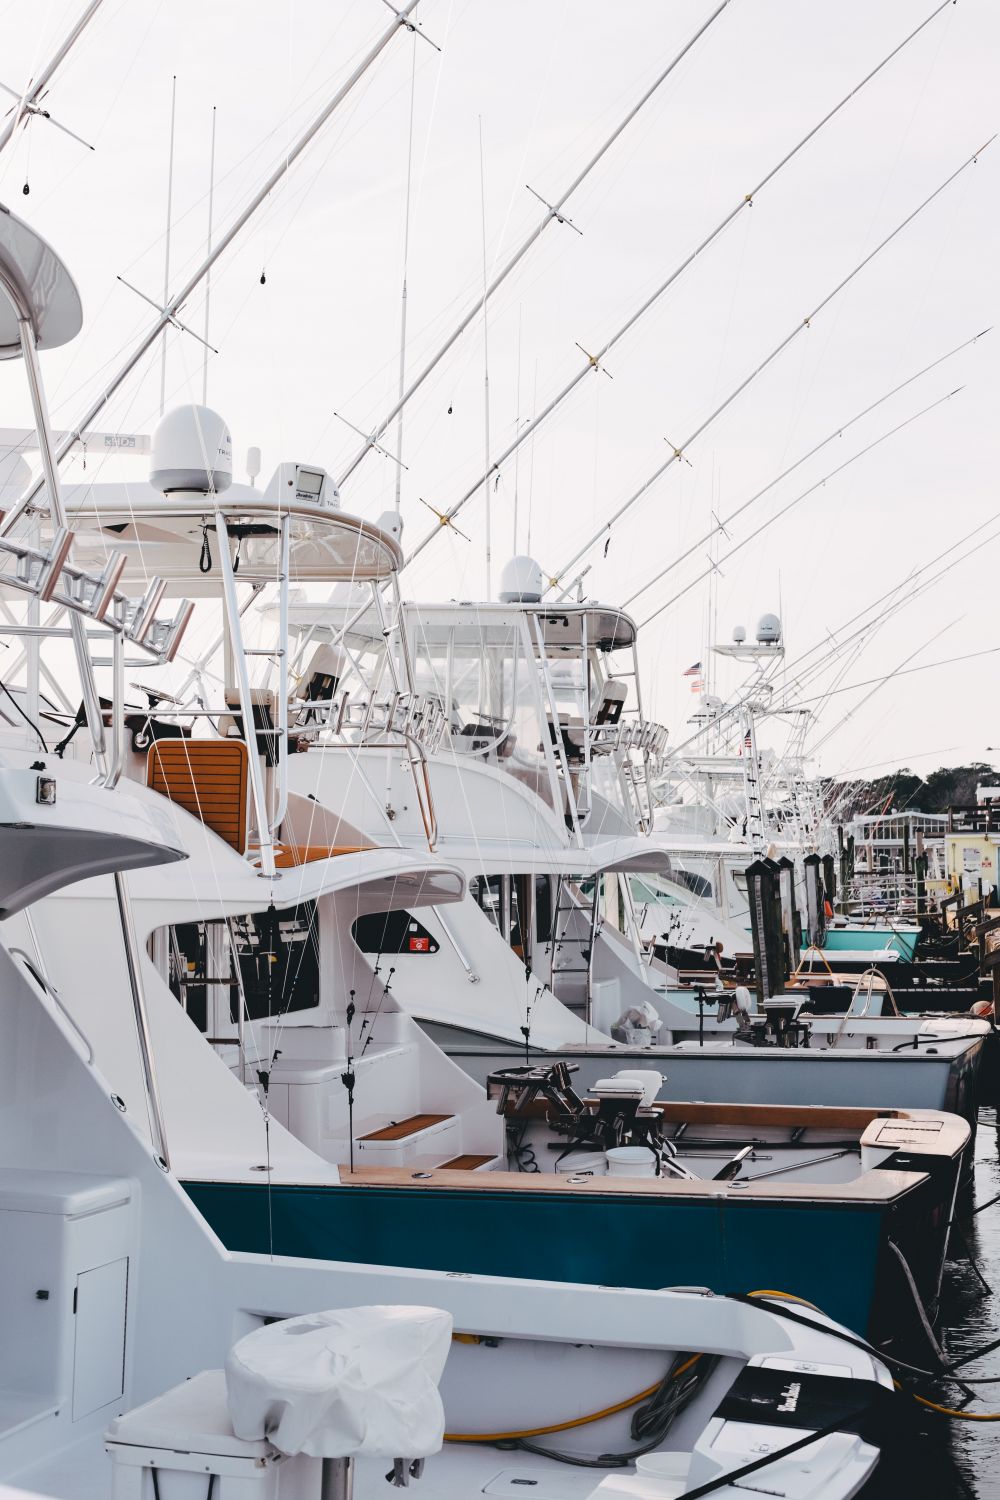 Vänd dig till båtförsäljare som ser till att båtar säljes till rätt köpare